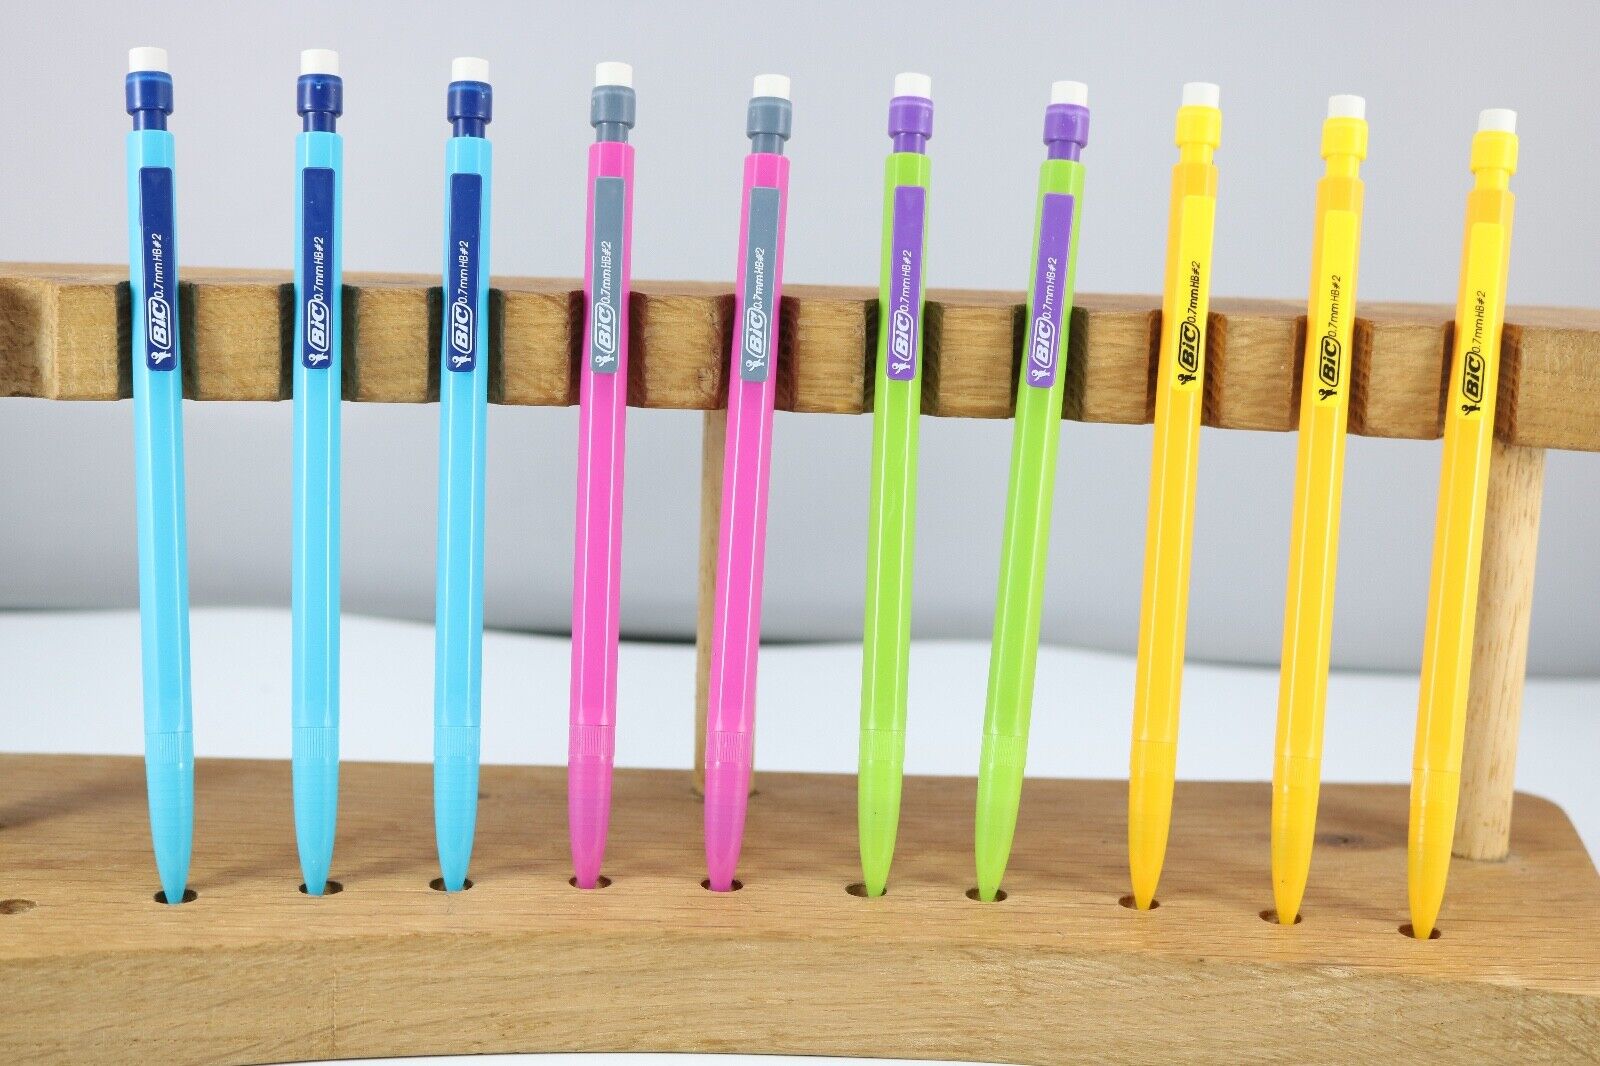 BIC Matic Fun 10 x 0.7mm Mechanical Pencils